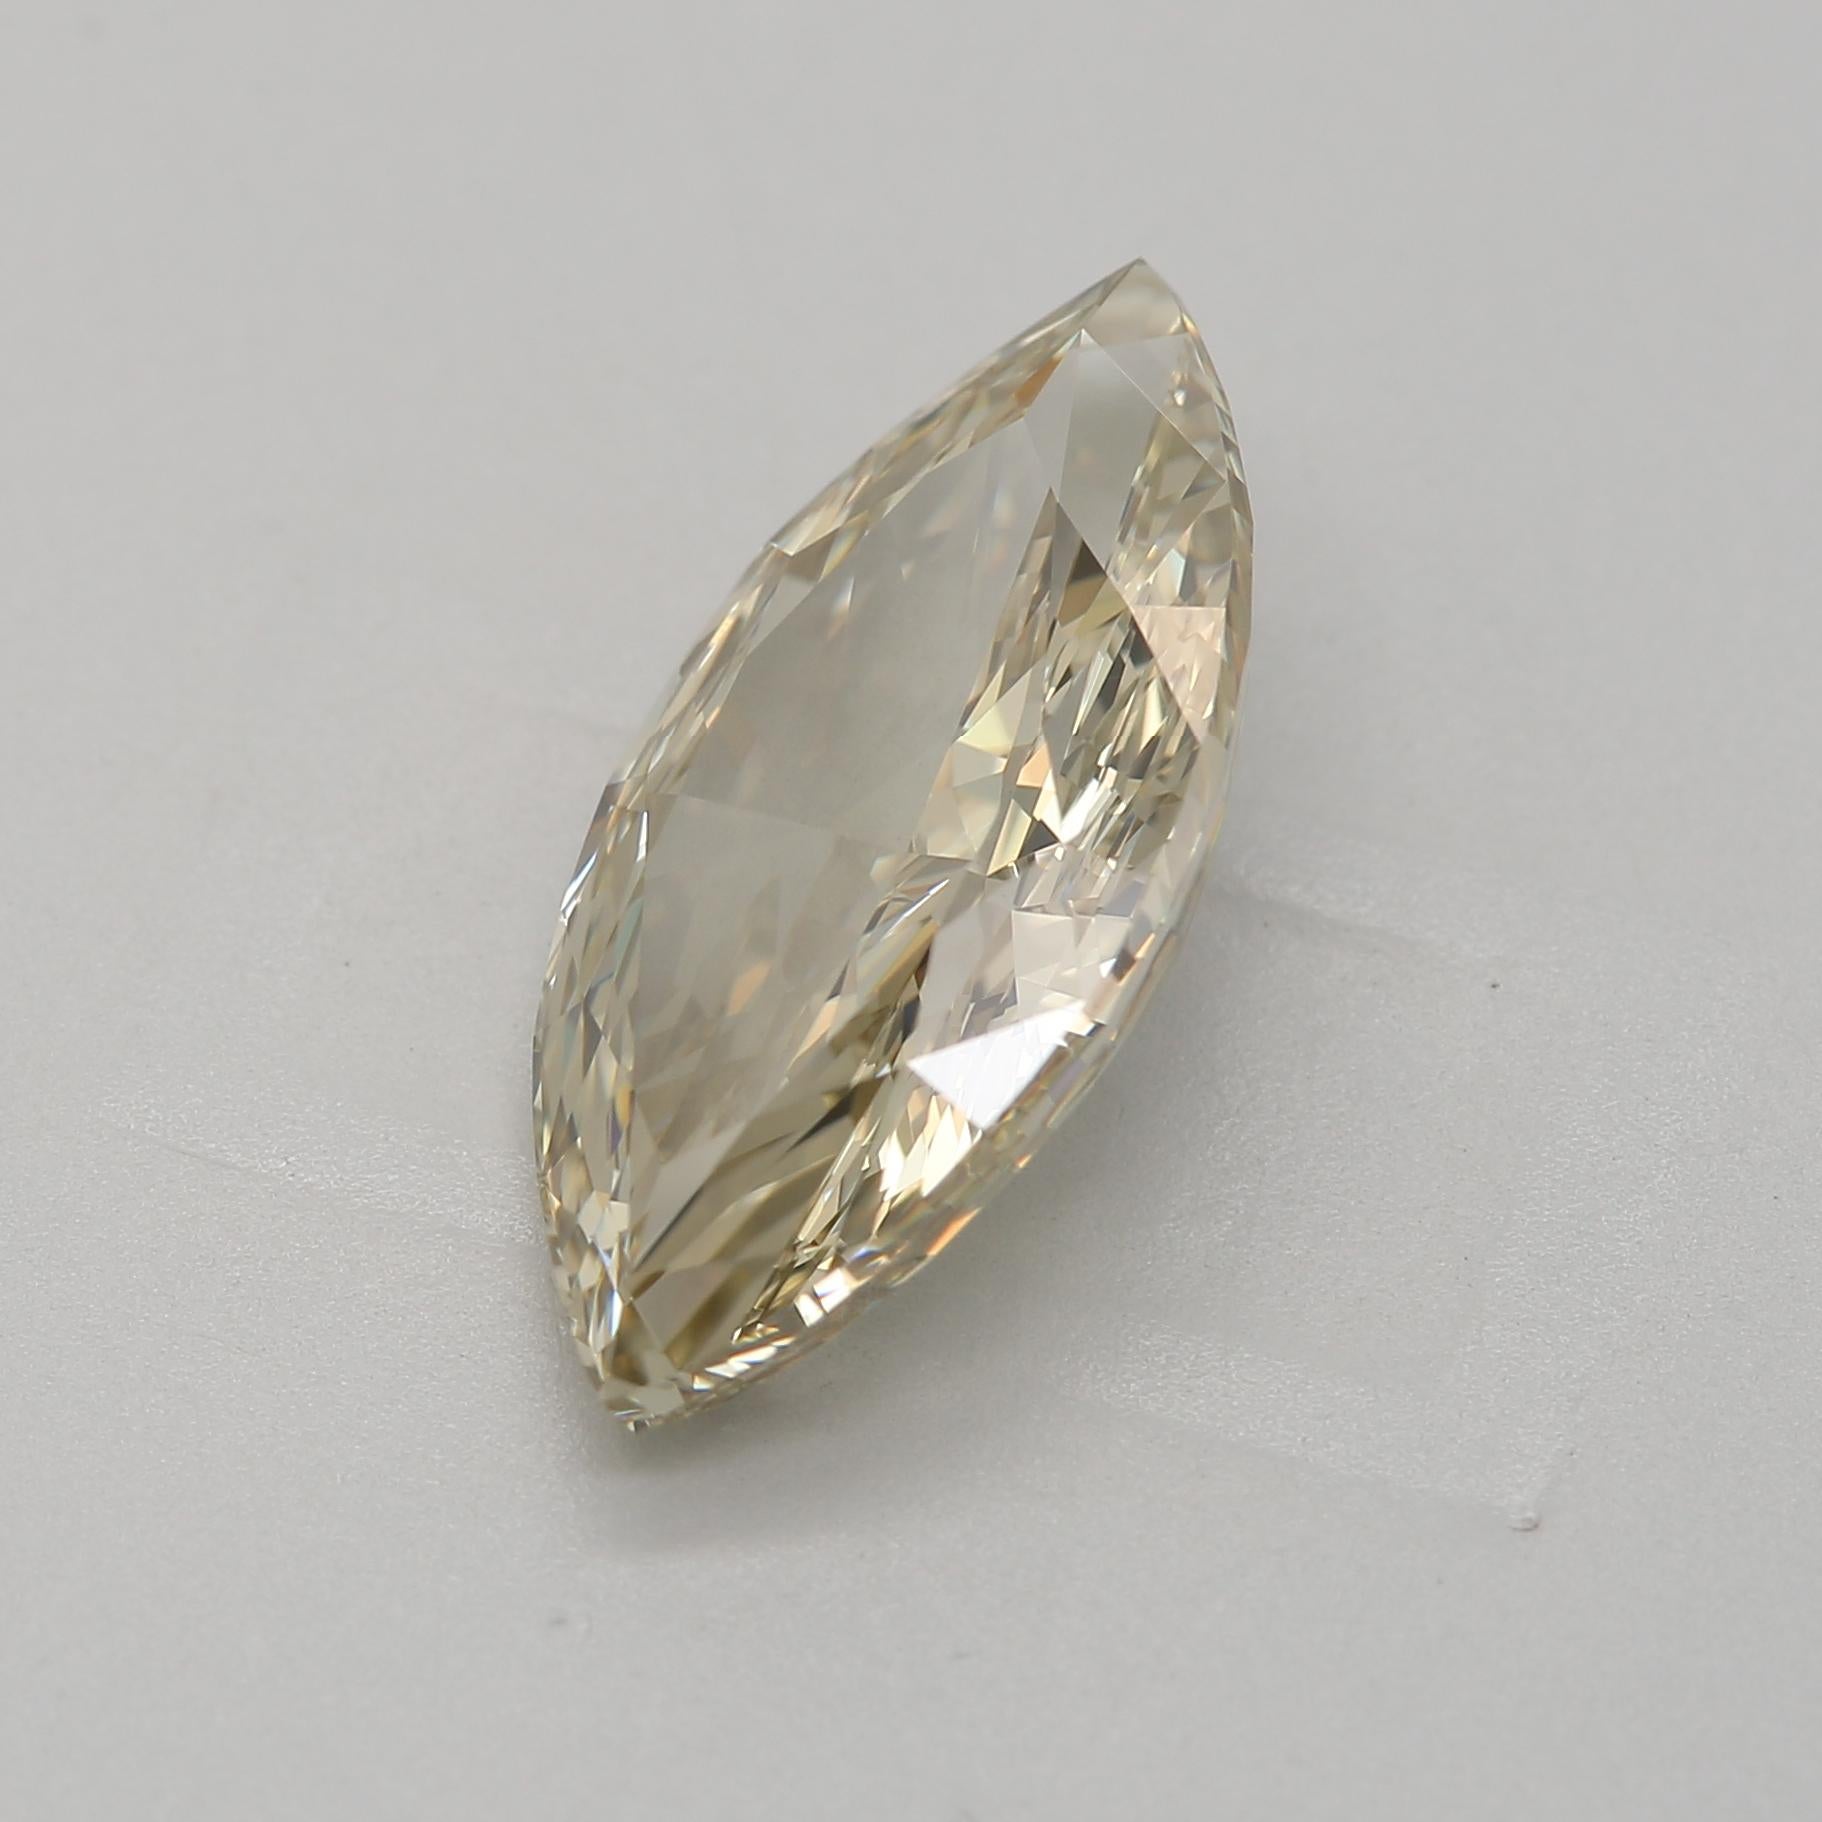 ***100% NATÜRLICHE FANCY-DIAMANTEN***

Diamant Details

➛ Form: Marquise
➛ Farbgrad: Fancy Bräunlich Grünlich Gelb
➛ Karat: 2,71
➛ Klarheit: VVS2
➛ GIA zertifiziert 

^MERKMALE DES DIAMANTEN^

Unser 2,71-Karat-Diamant ist ein großer Edelstein, der